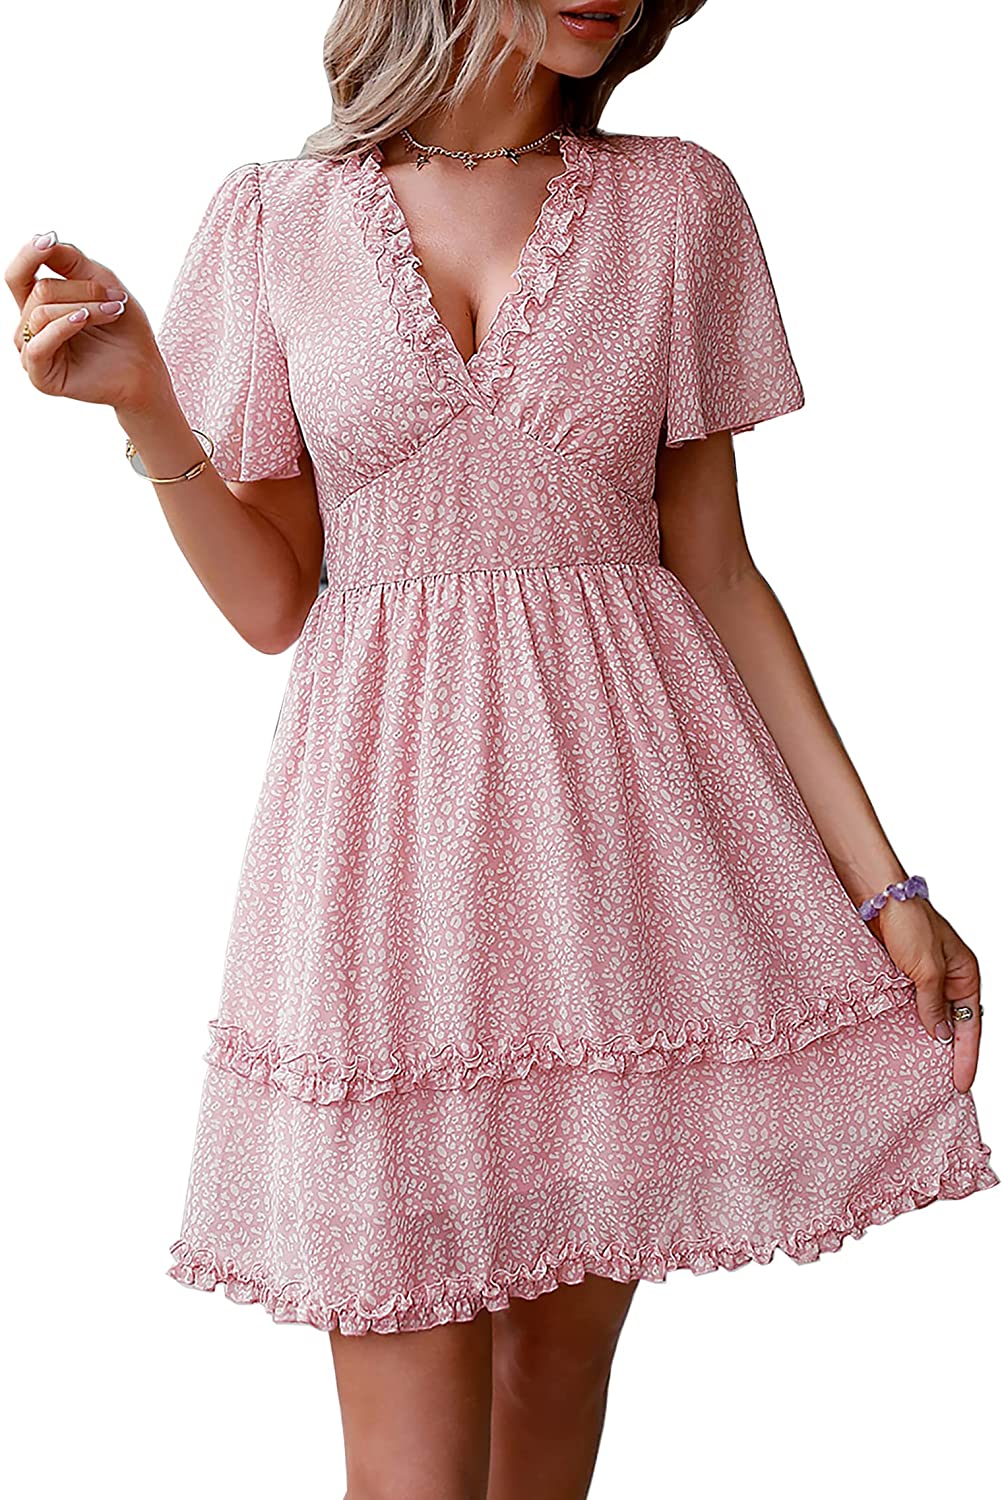 Women’s Summer Hot Short Sleeve V-Neck High Waist Floral Print Mini Boho Sun Dress with Button